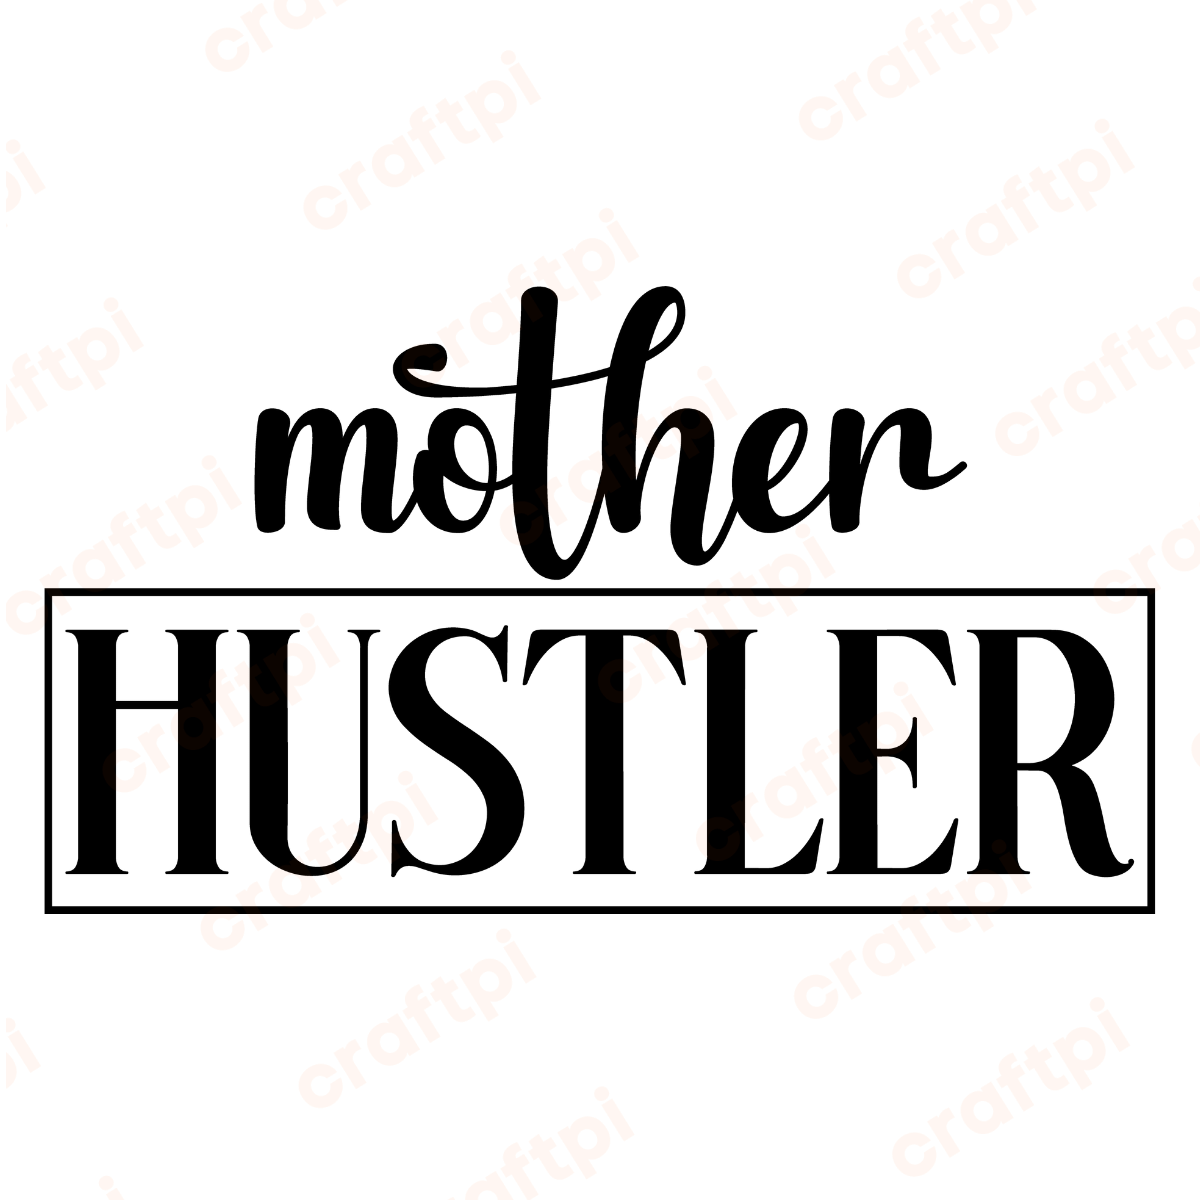 mother hustler with frame